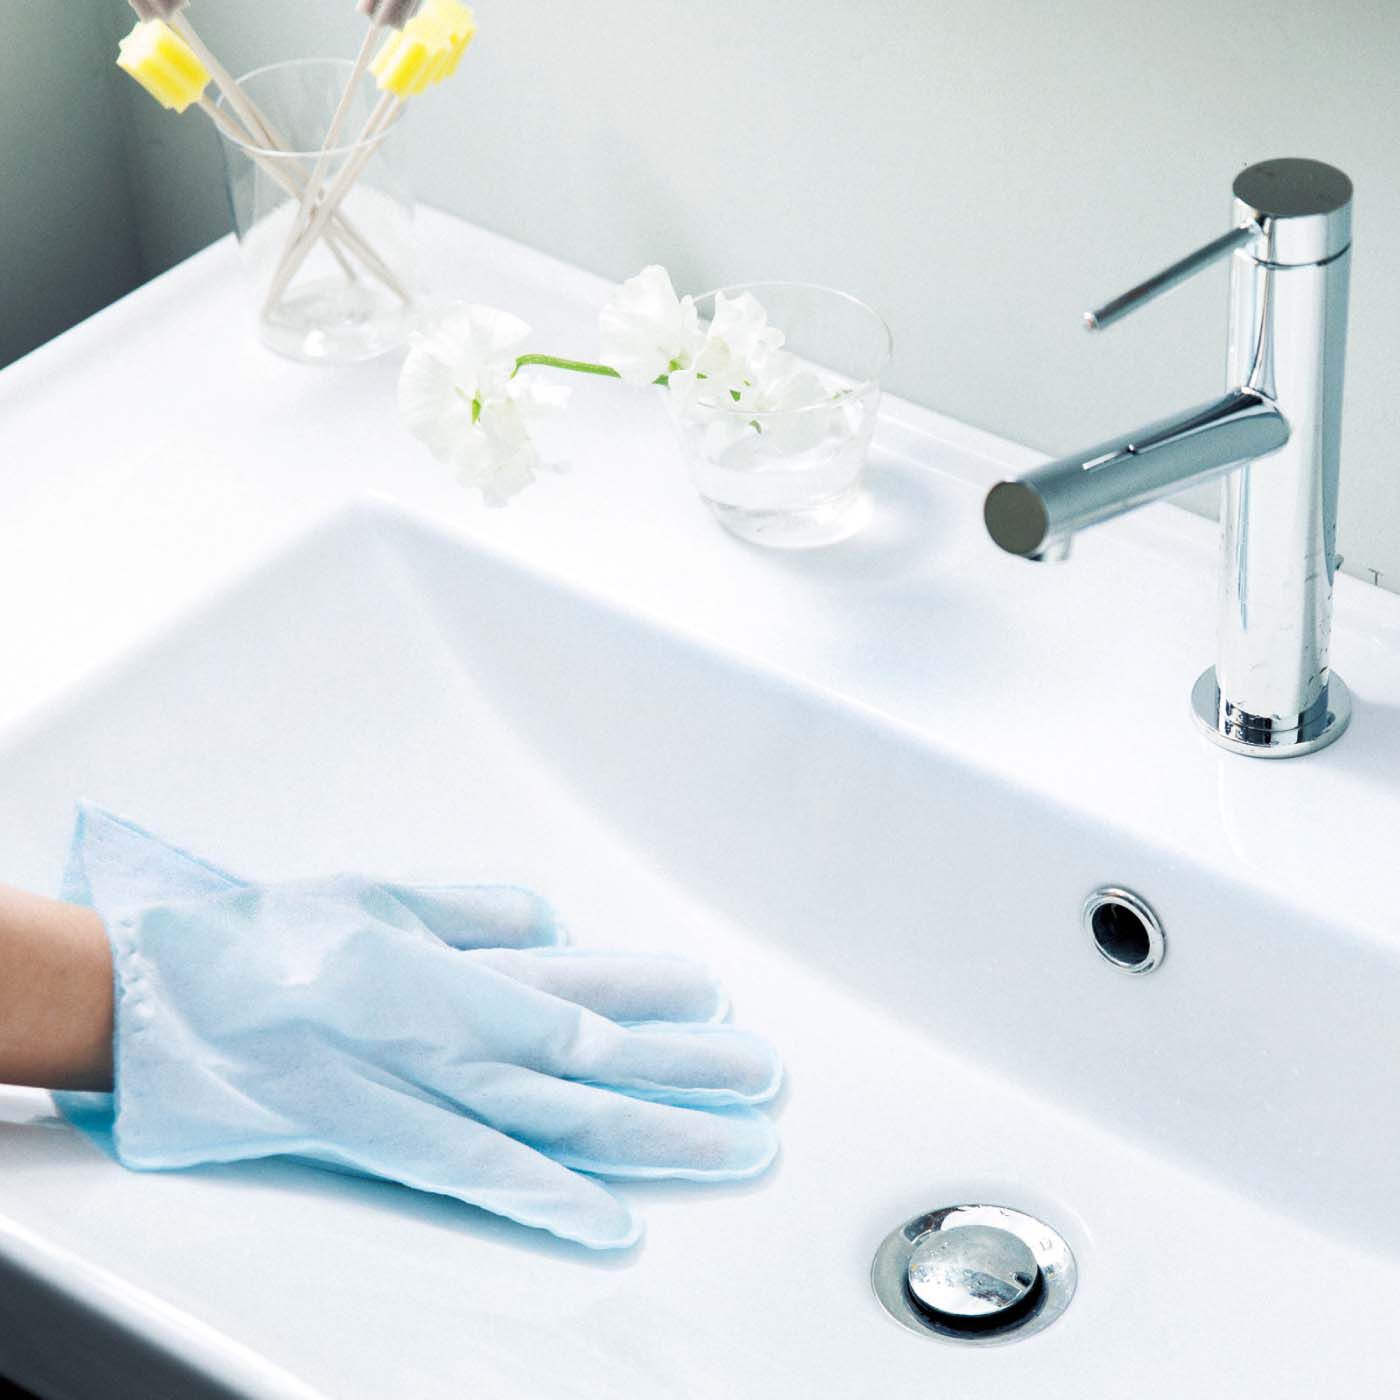 フェリシモの雑貨 Kraso|1/d COATING GLOVE　撥水（はっすい）コーティング手袋の会|掃除後の洗面台を「撥水コーティング手袋」でまんべんなく塗布。縁の裏側や蛇口まわりもしっかり